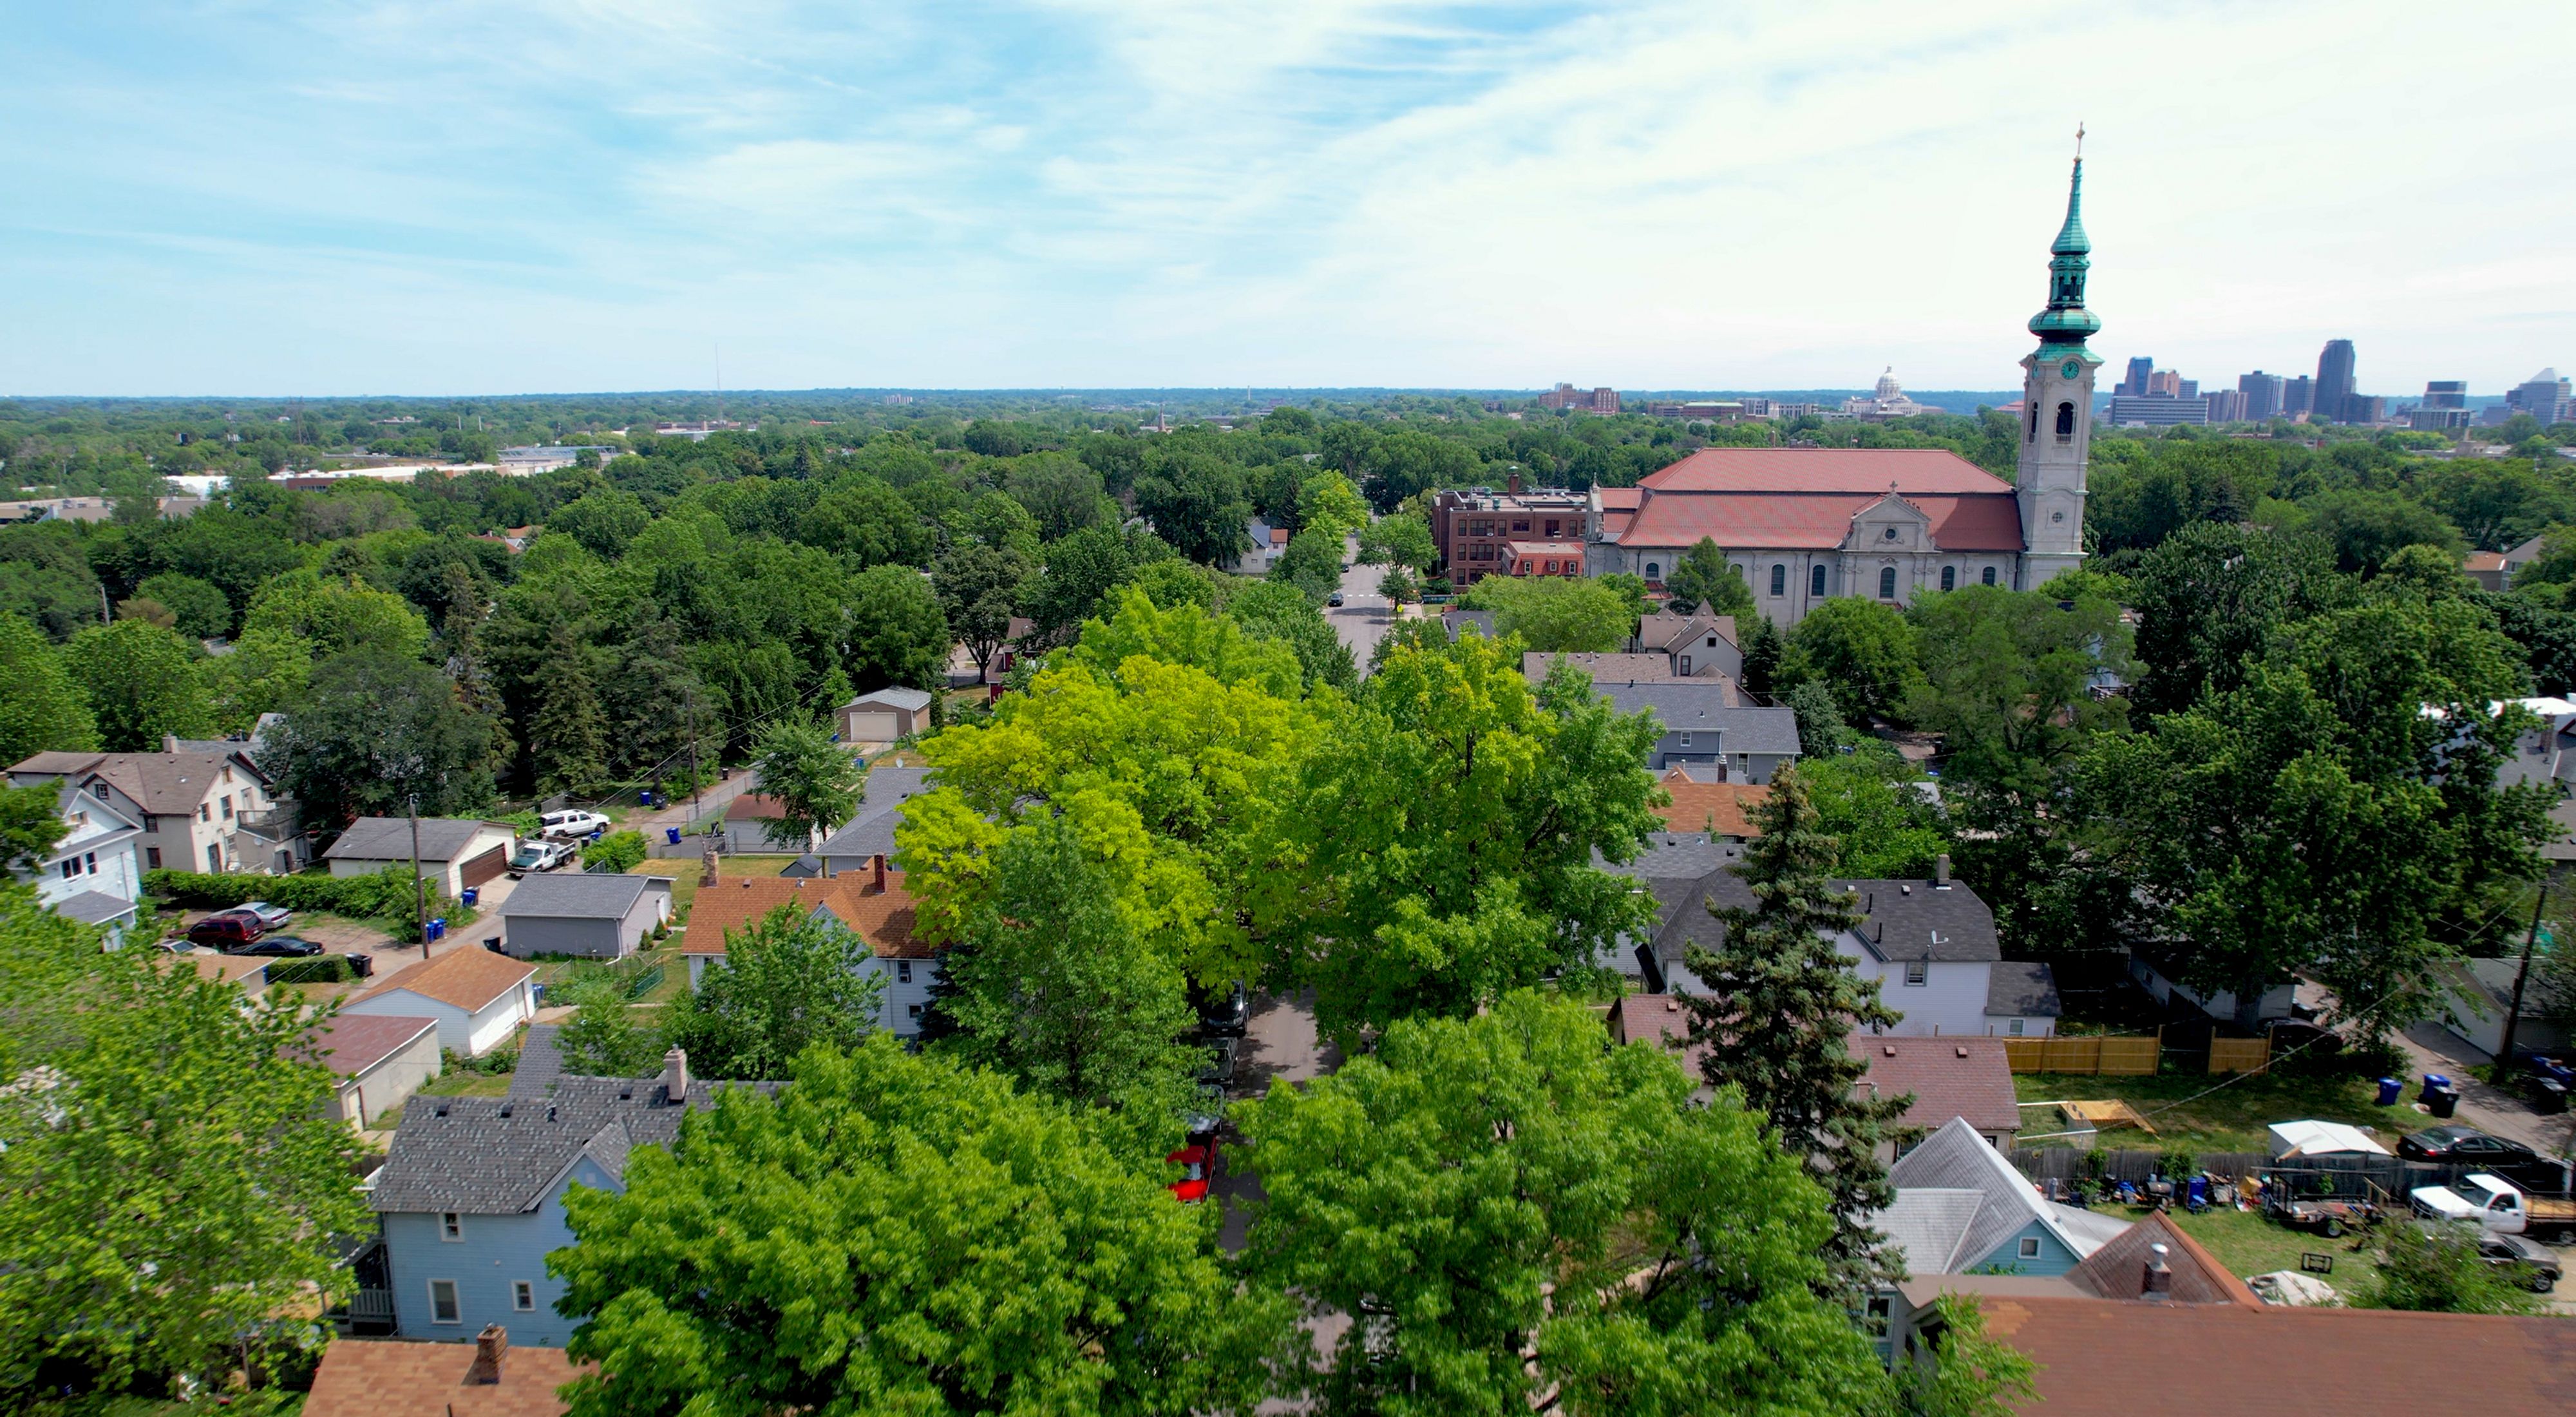 Aerial view of St. Paul's Frogtown neighborhood.